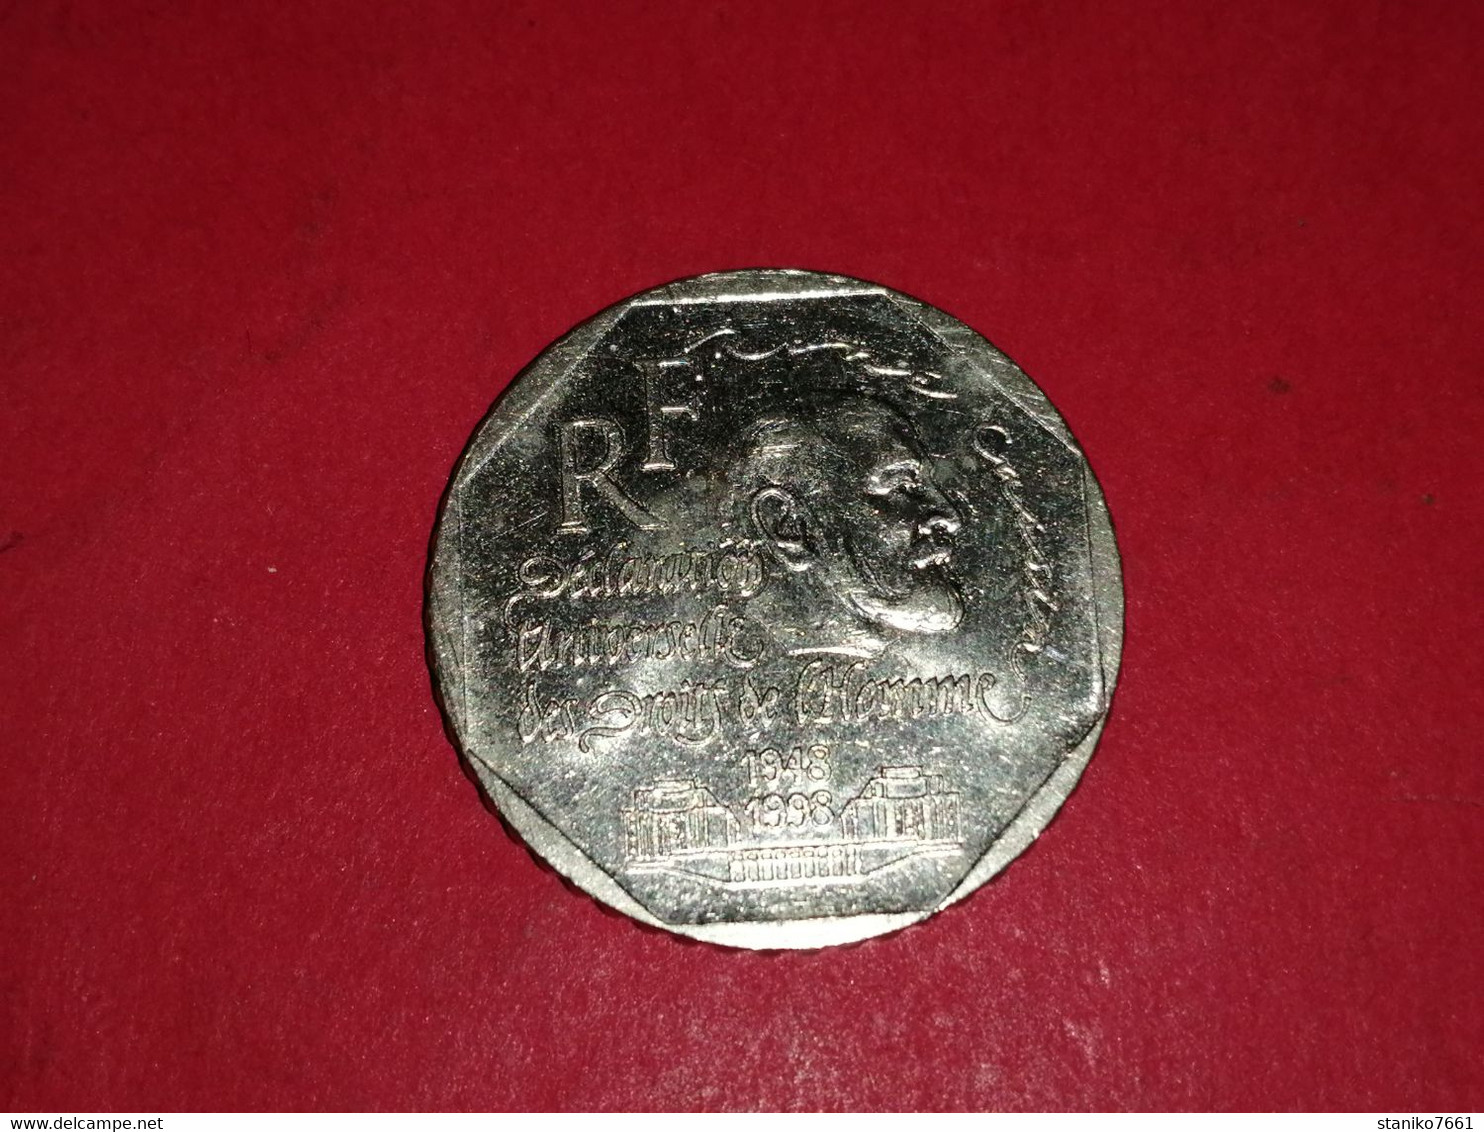 2 FRANCS RENE CASSIN DROIT DE L'HOMME COMMEMORATIVE 1948-1998  TTB+++ - Gedenkmünzen